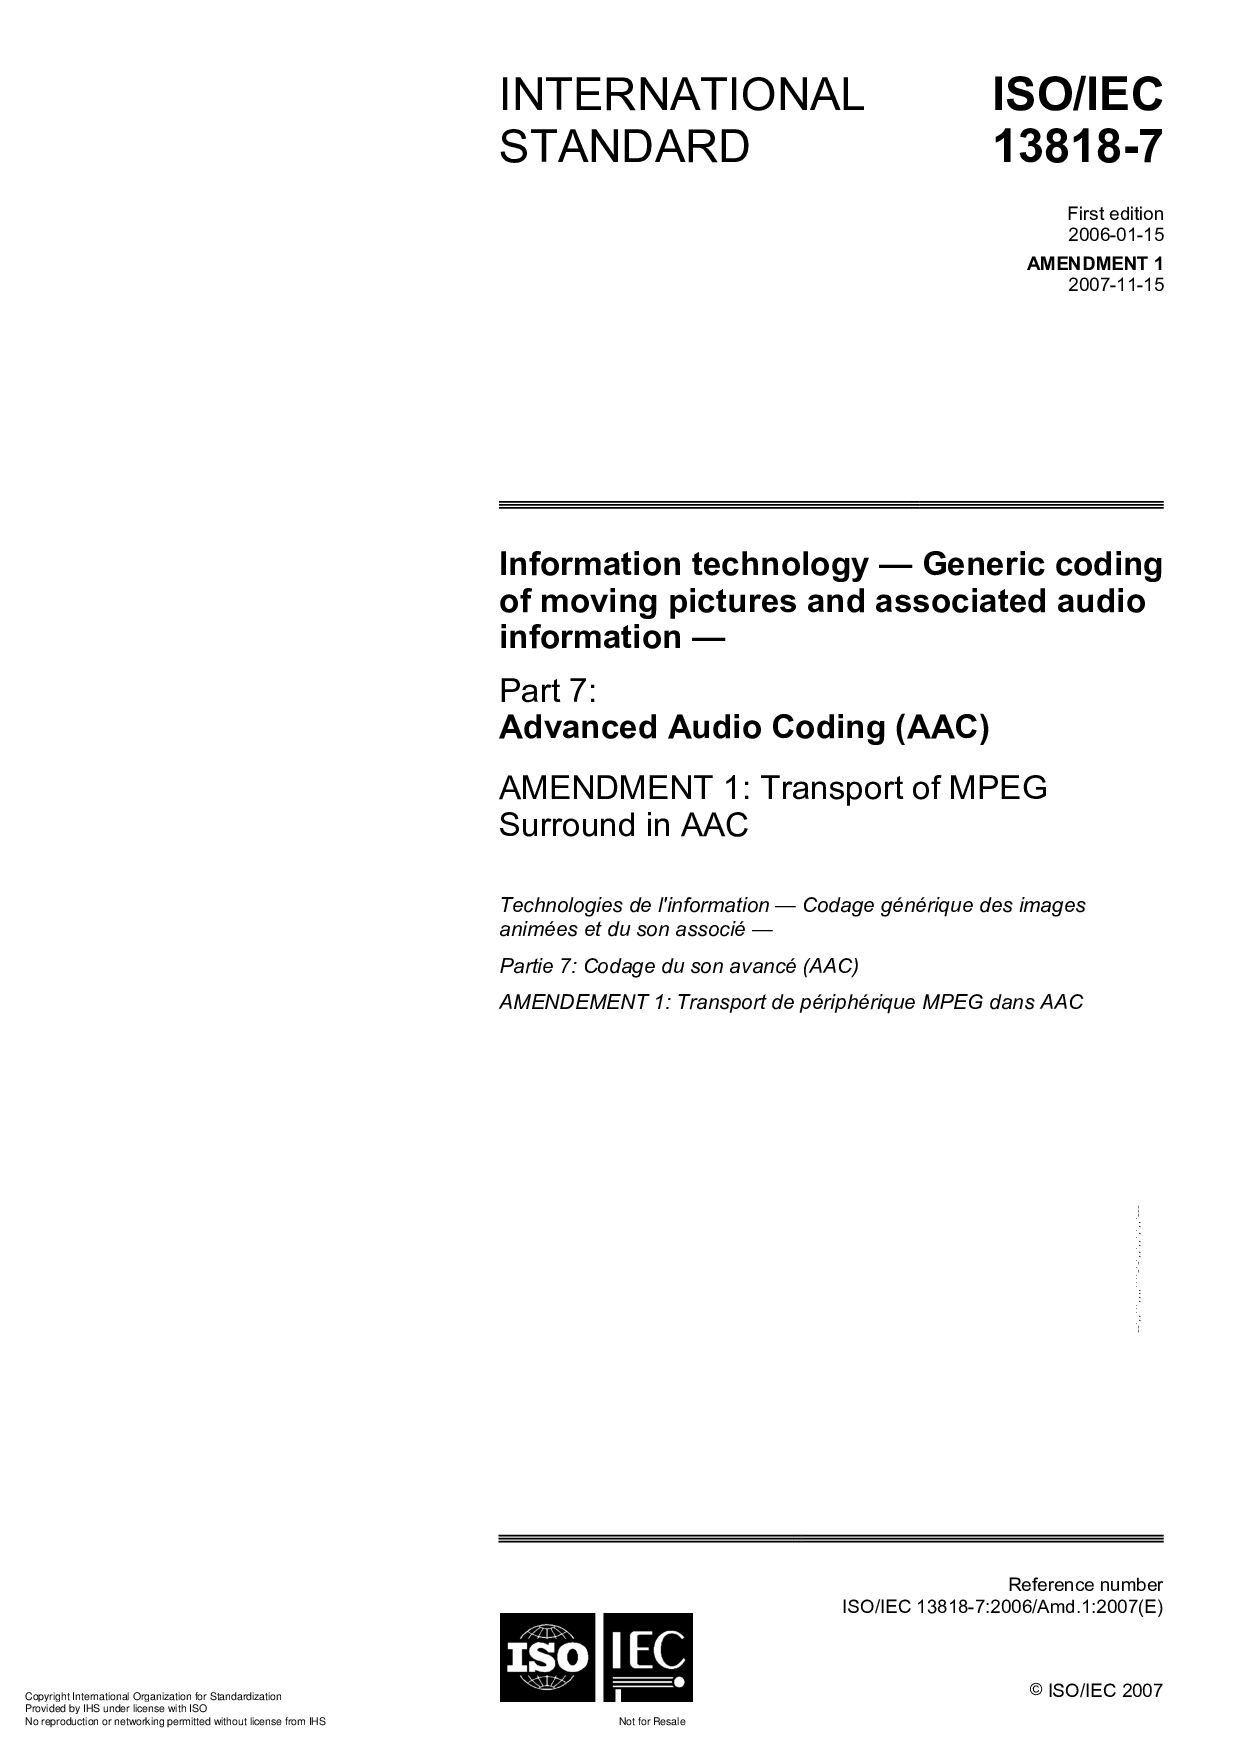 ISO/IEC 13818-7:2006/Amd 1:2007封面图